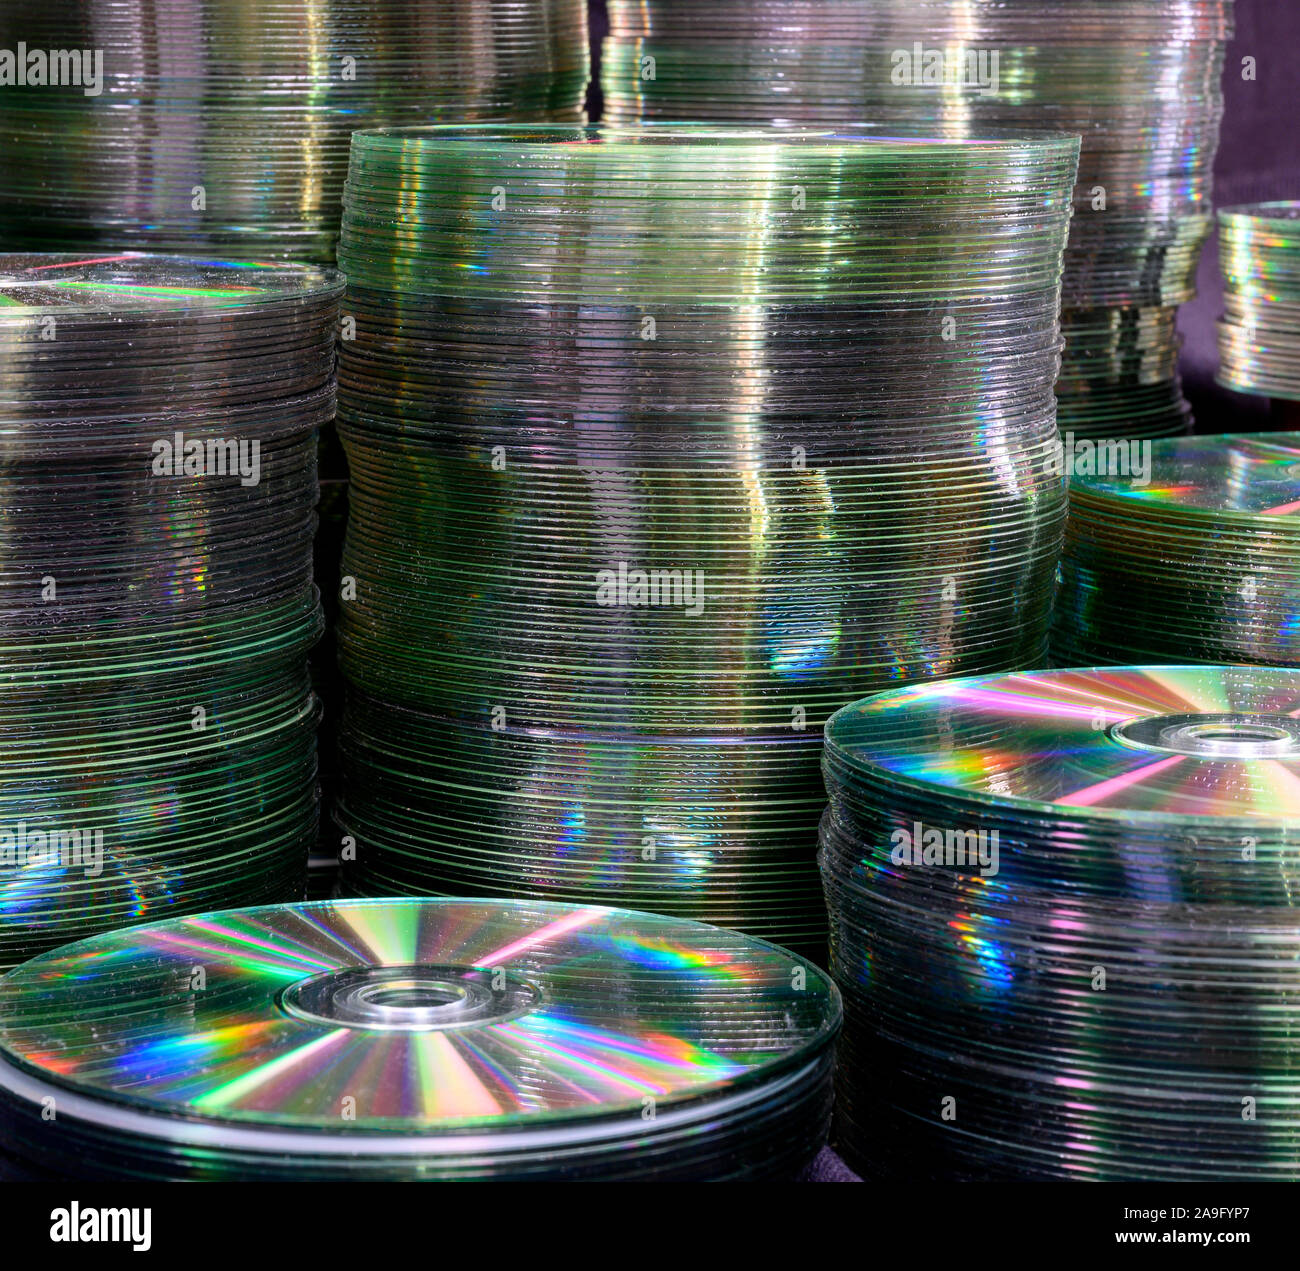 Vue de la création de piles de vieux CD et DVD. Banque D'Images